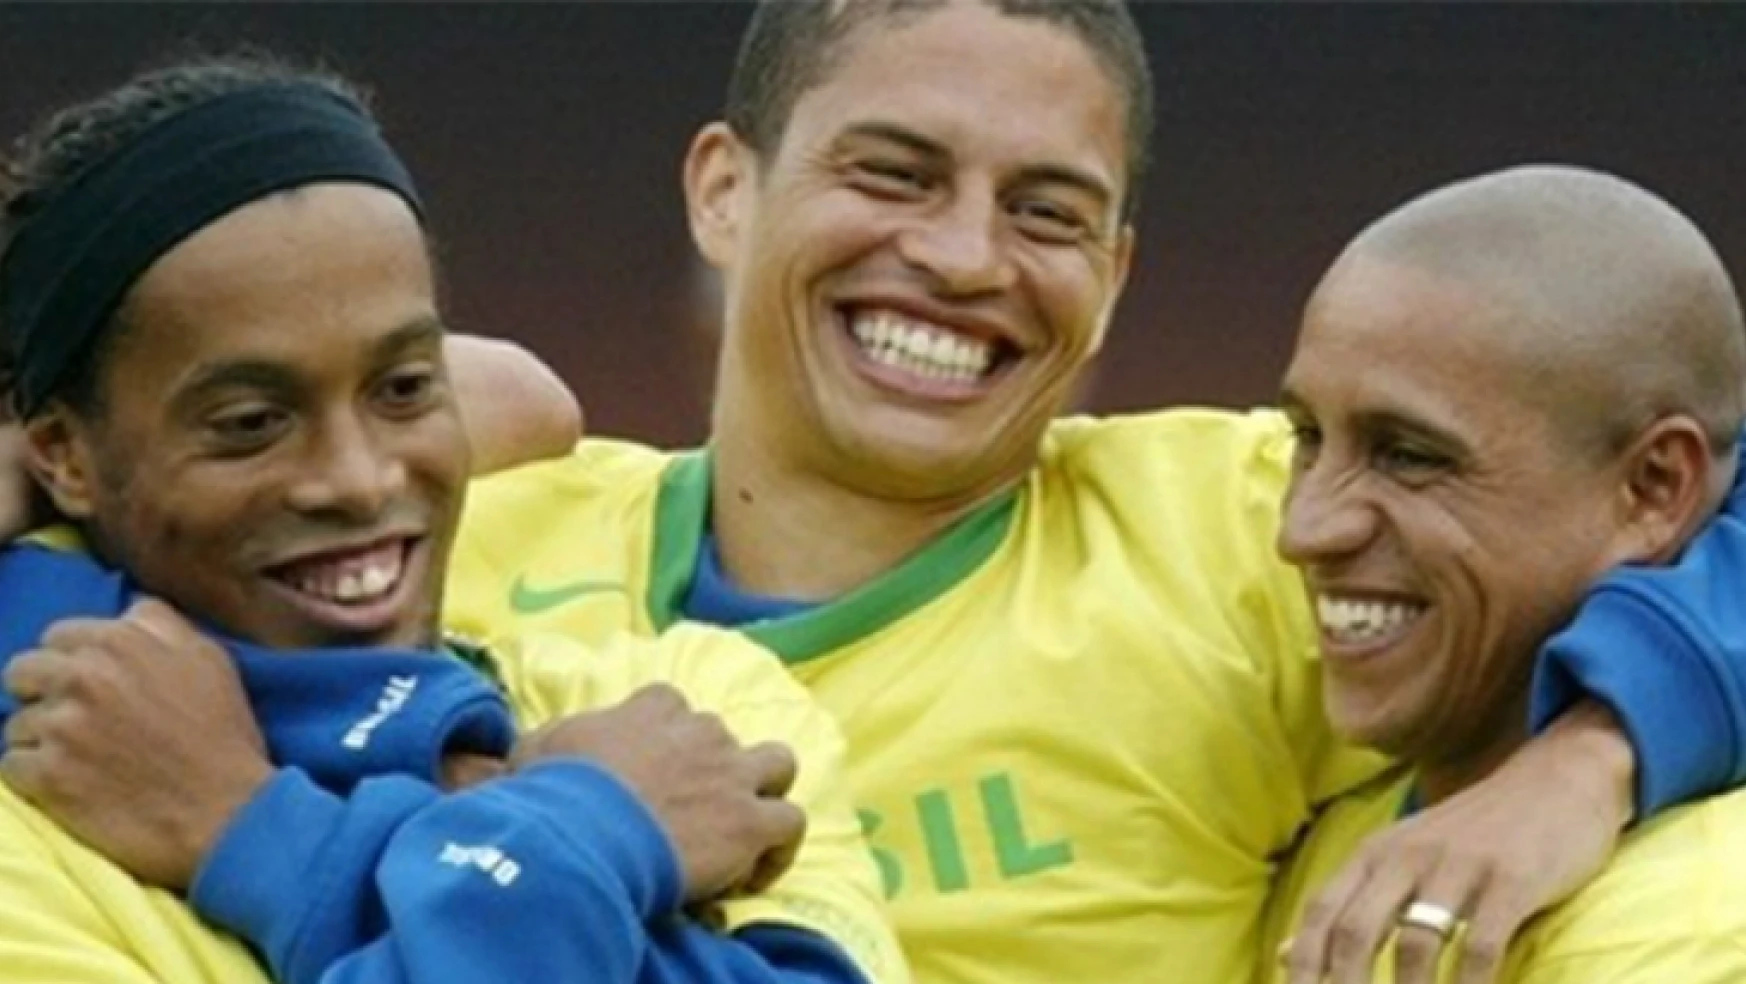 Dünya Brezilyalı Futbolcu Seviyor